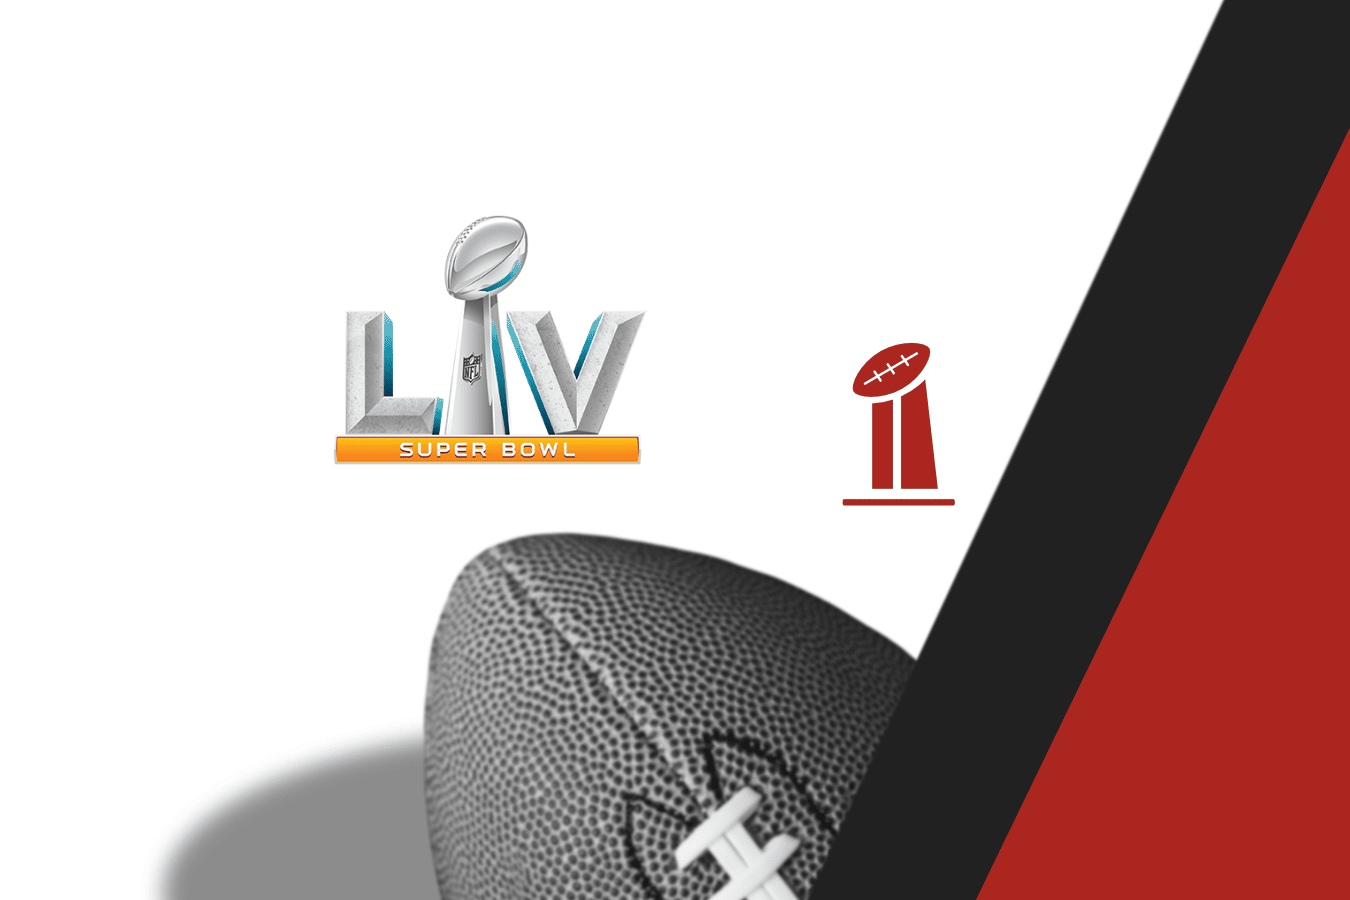 Who Will Win Super Bowl 55?